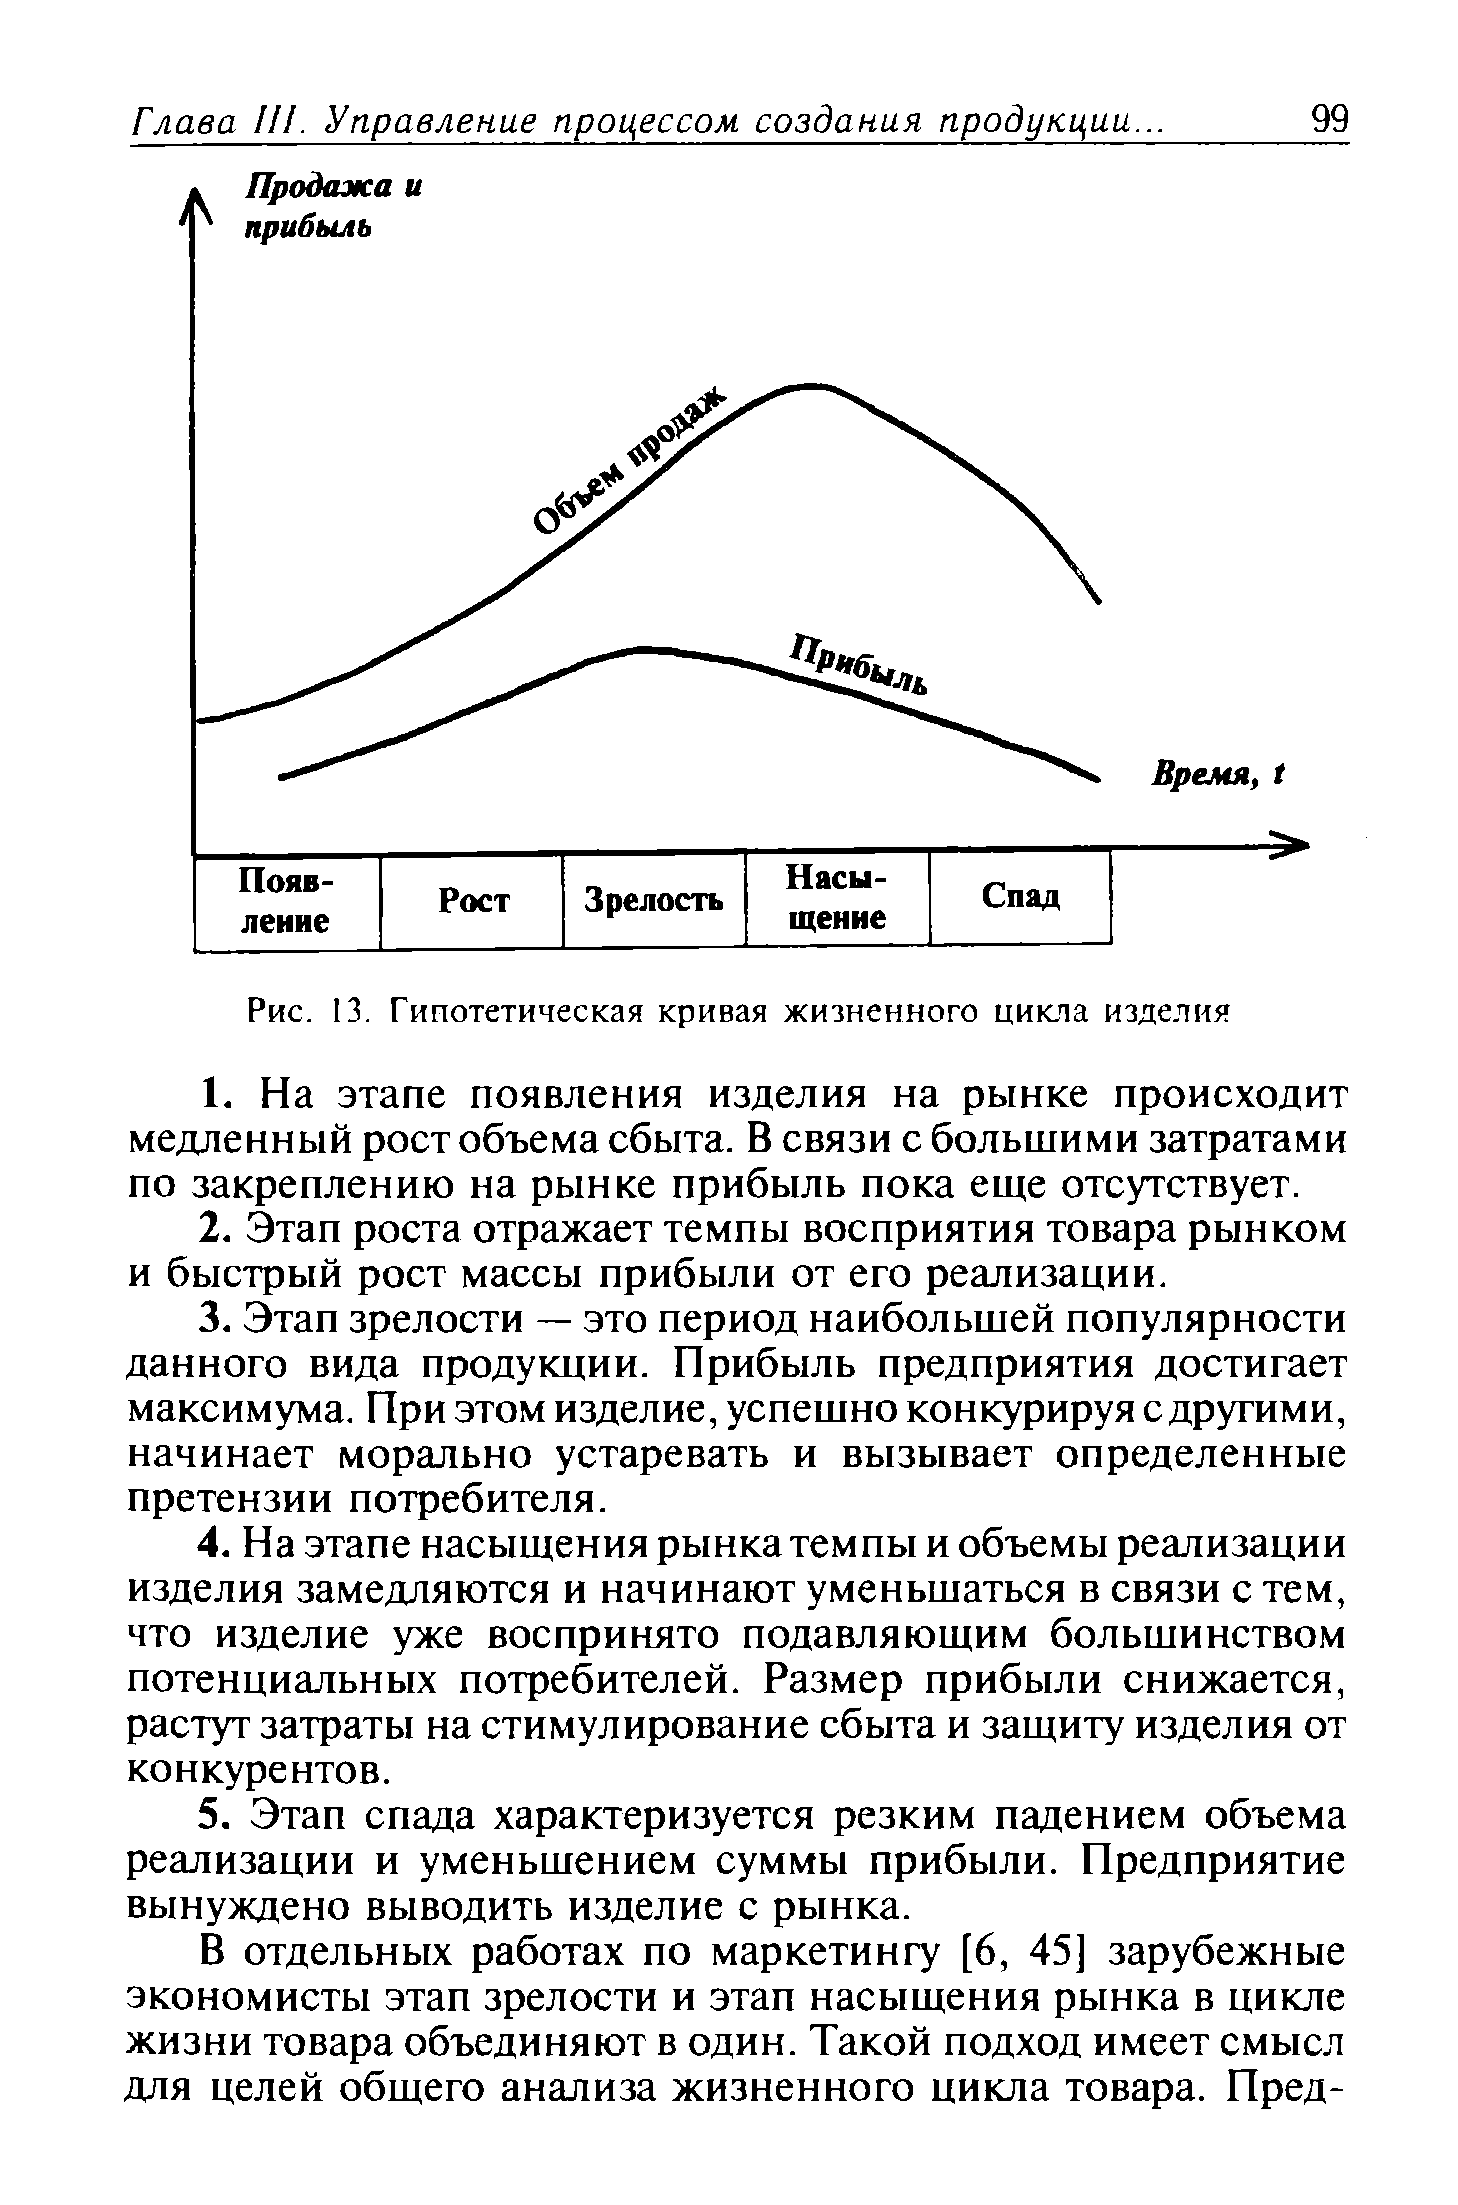 Рис. 13. Гипотетическая кривая жизненного цикла изделия
